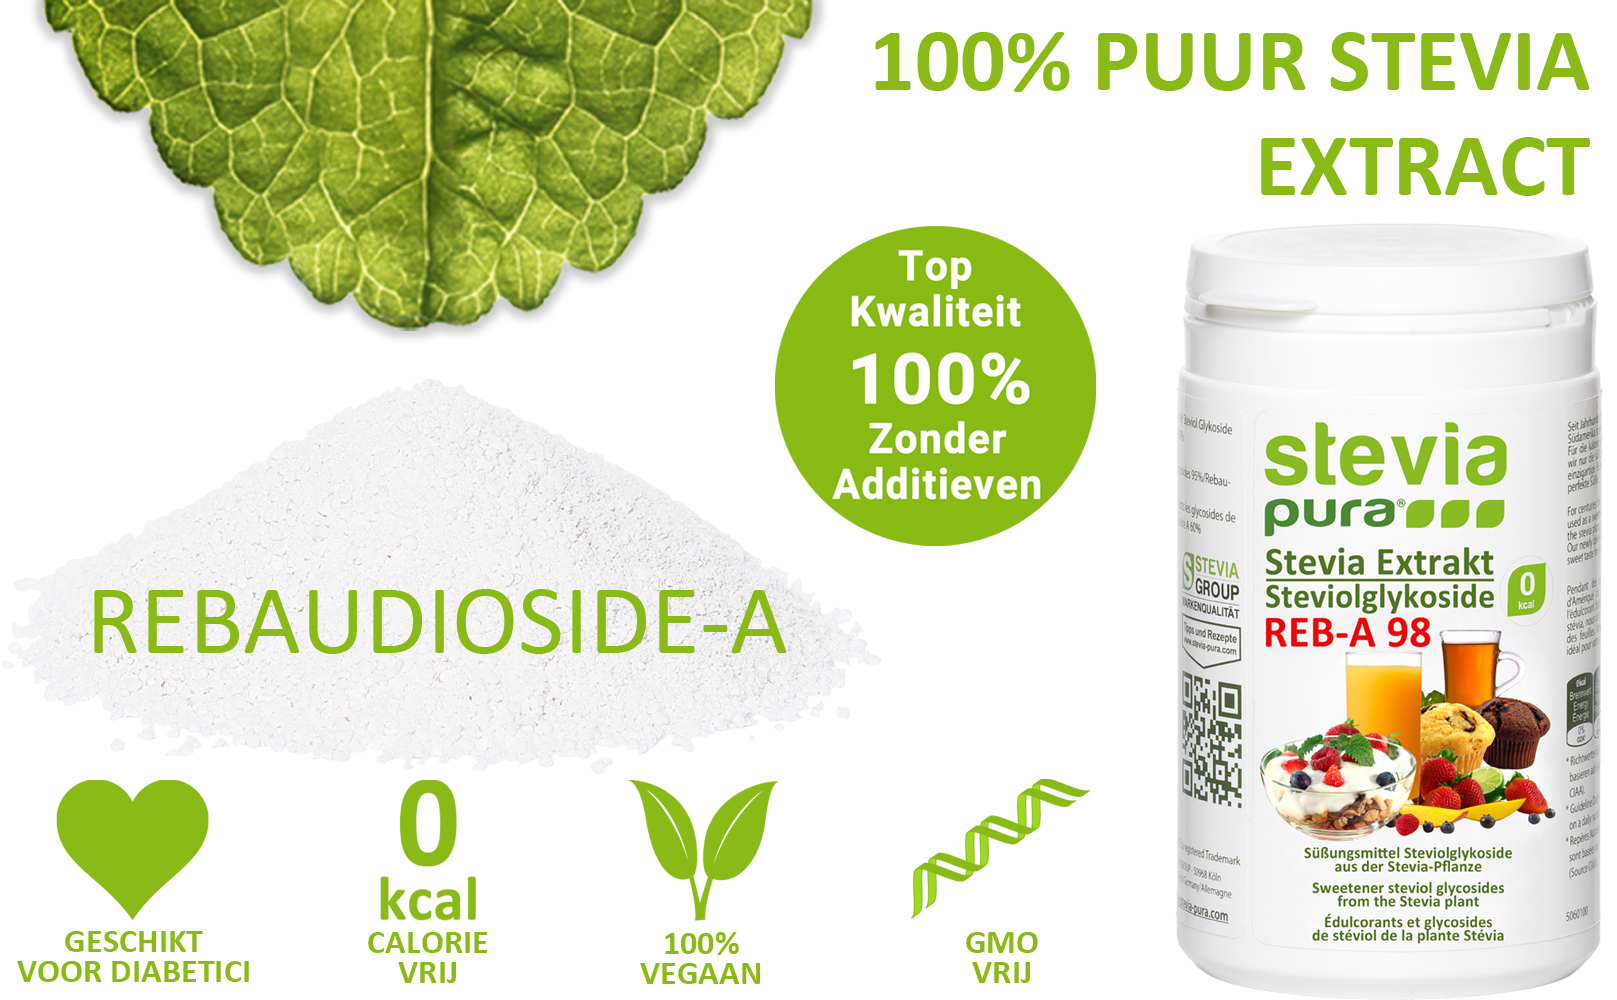 Zuiver Stevia-Extract Poeder Rebaudioside-A 98% kopen